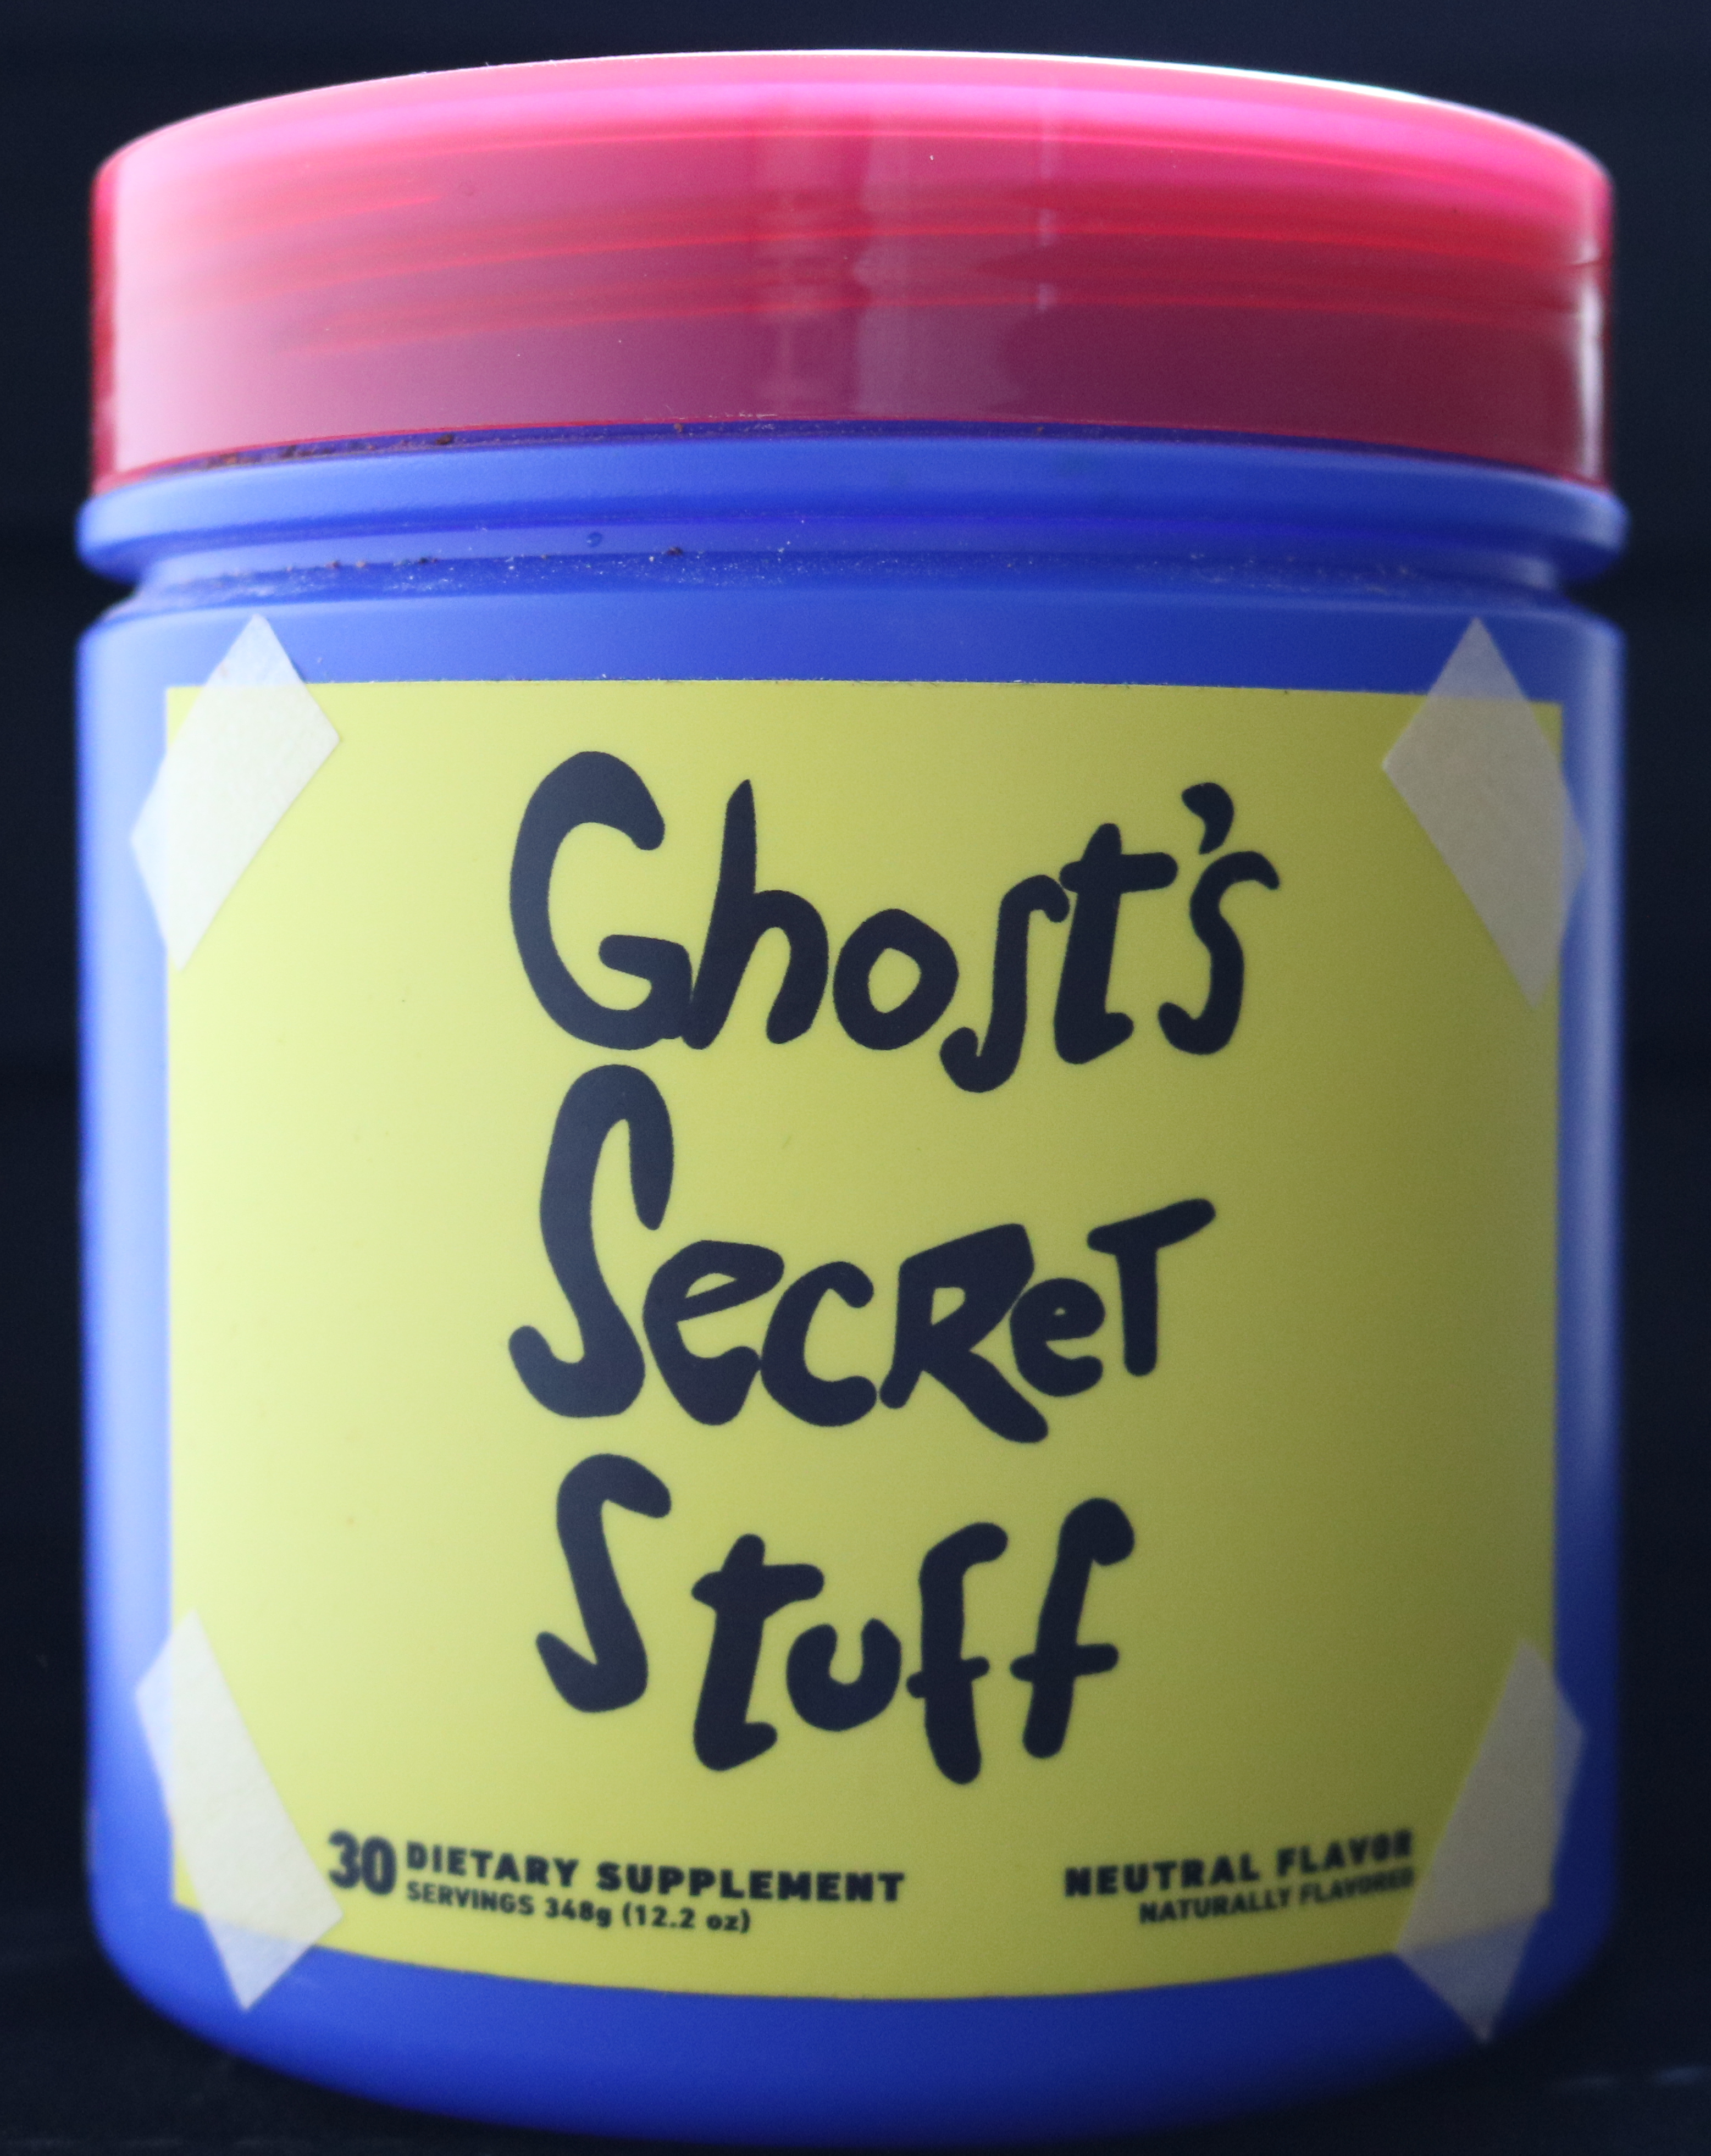 Ghost's Secret Stuff